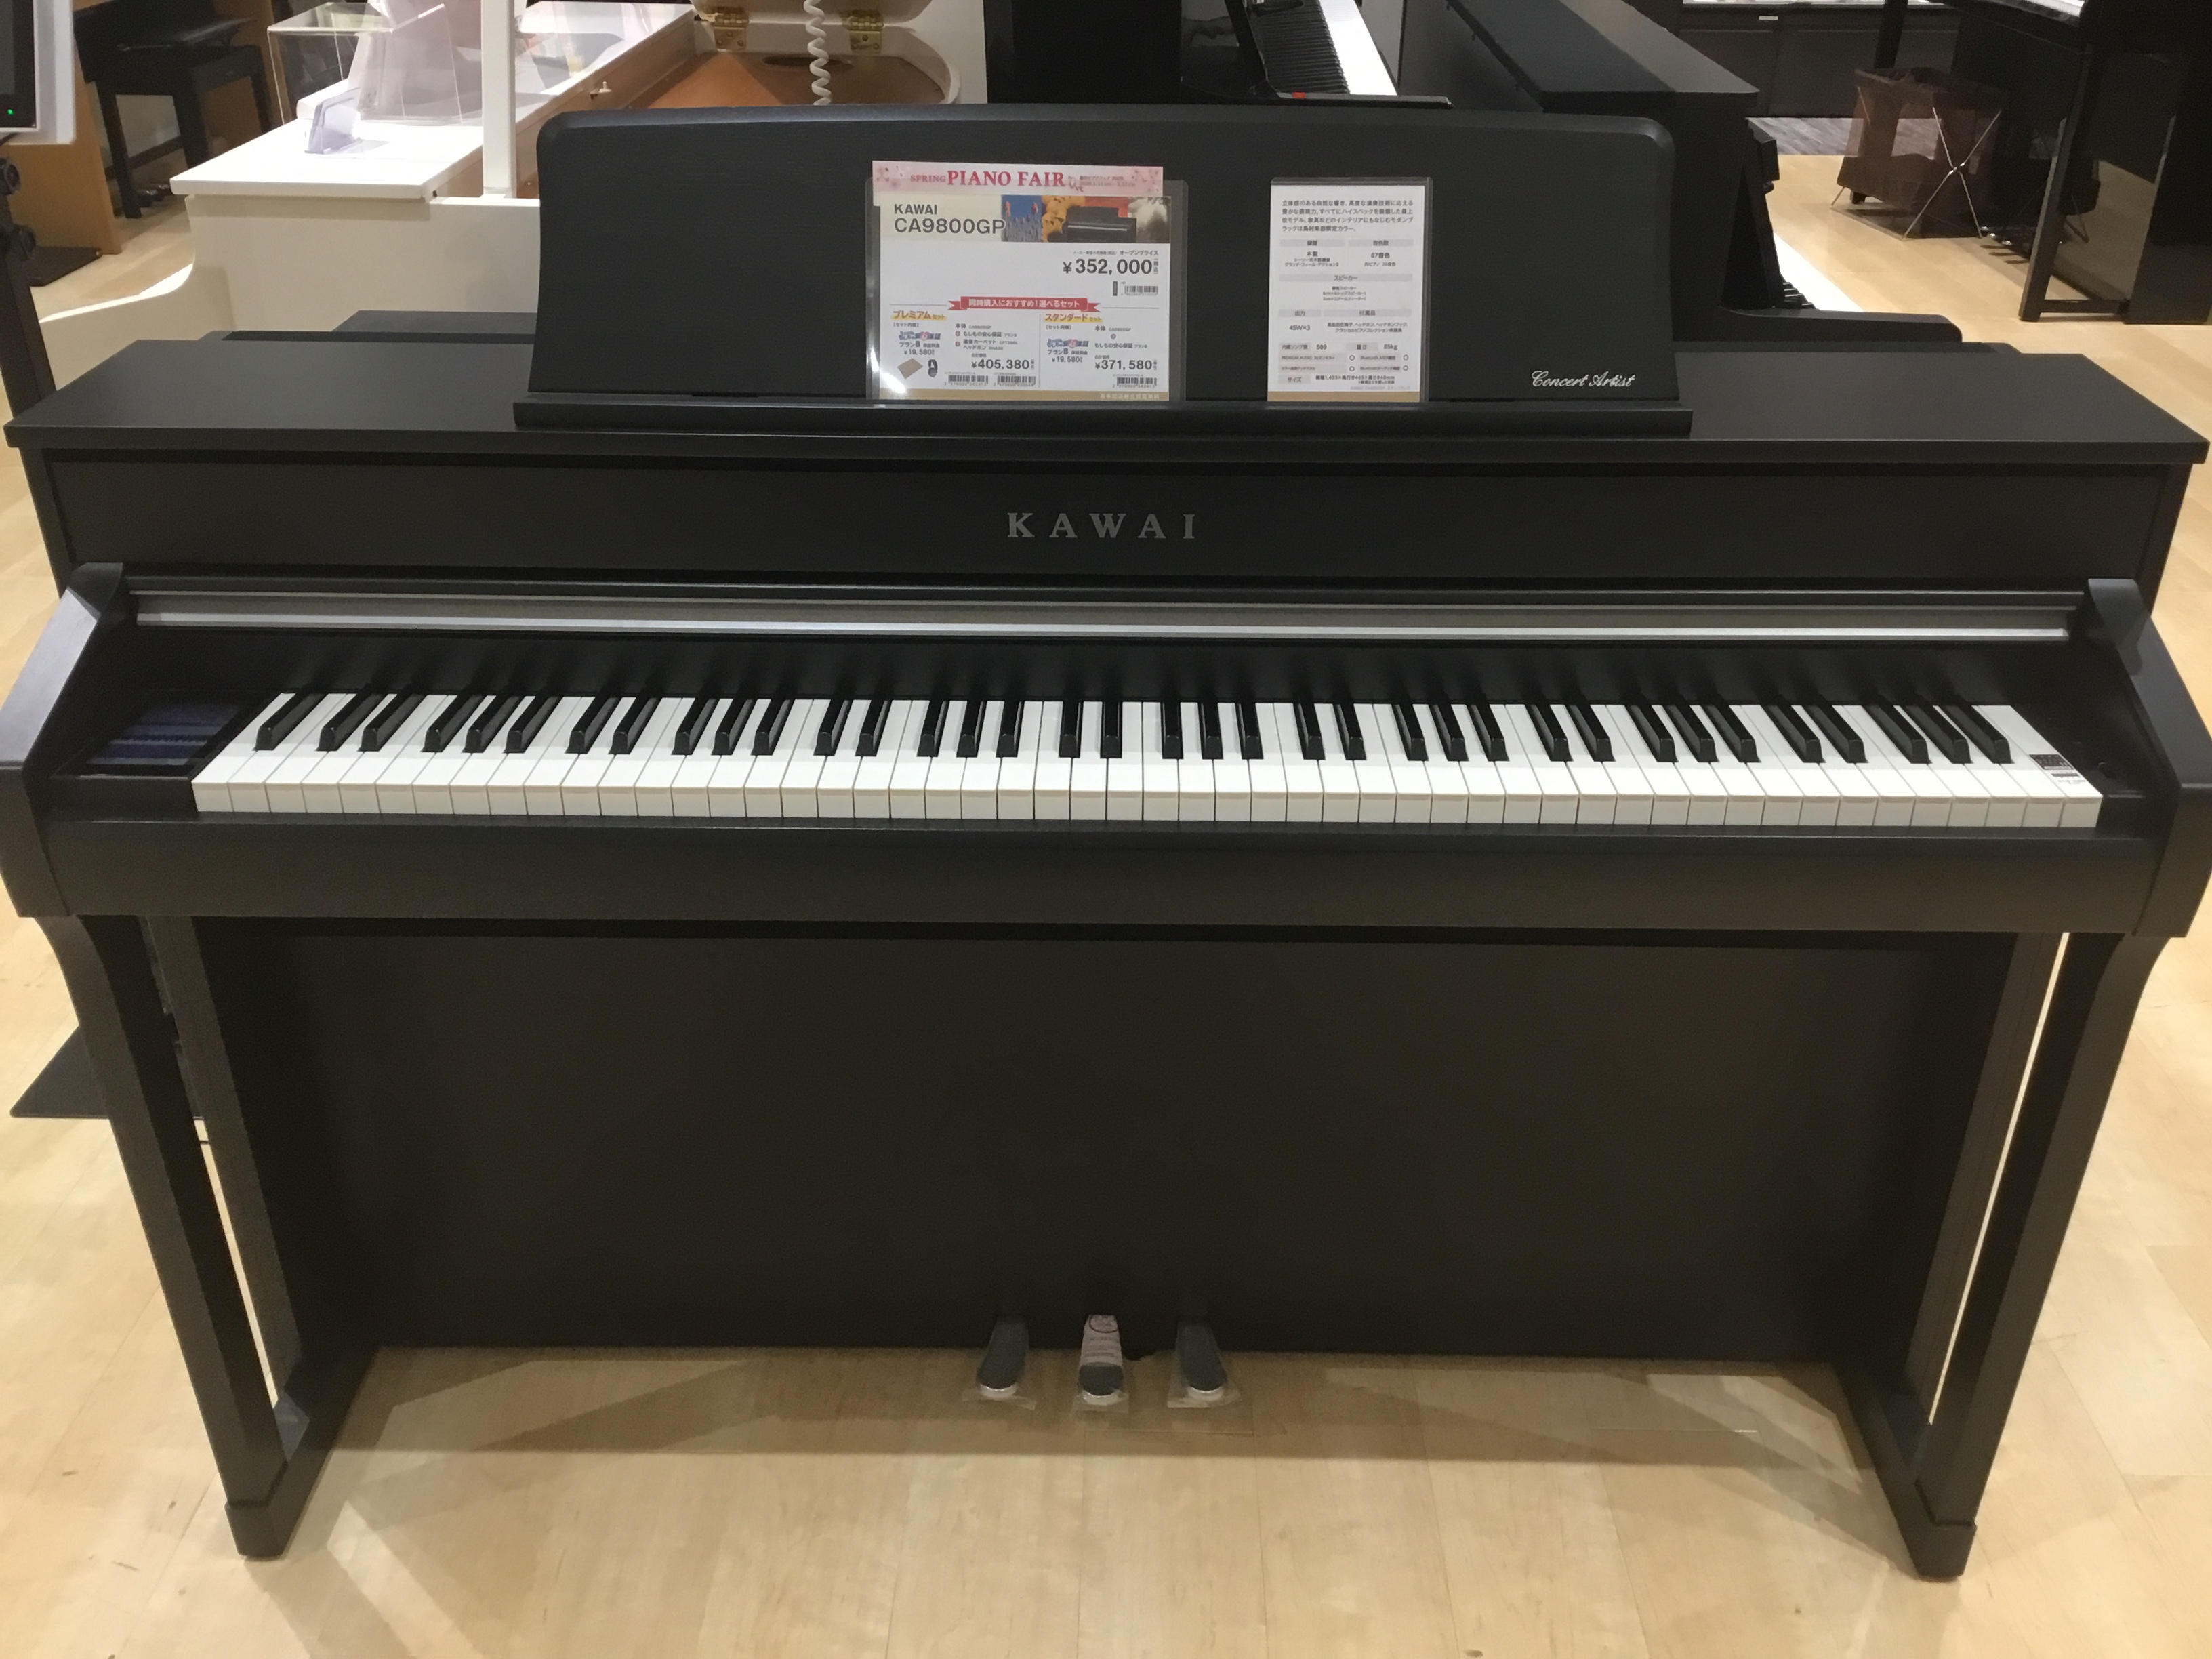 お買い得格安≪第2弾!送料無料!初心者応援セール!≫ KAWAI CA9800GP 中古 電子ピアノ 木製鍵盤 17年製 椅子付き カワイ カワイ